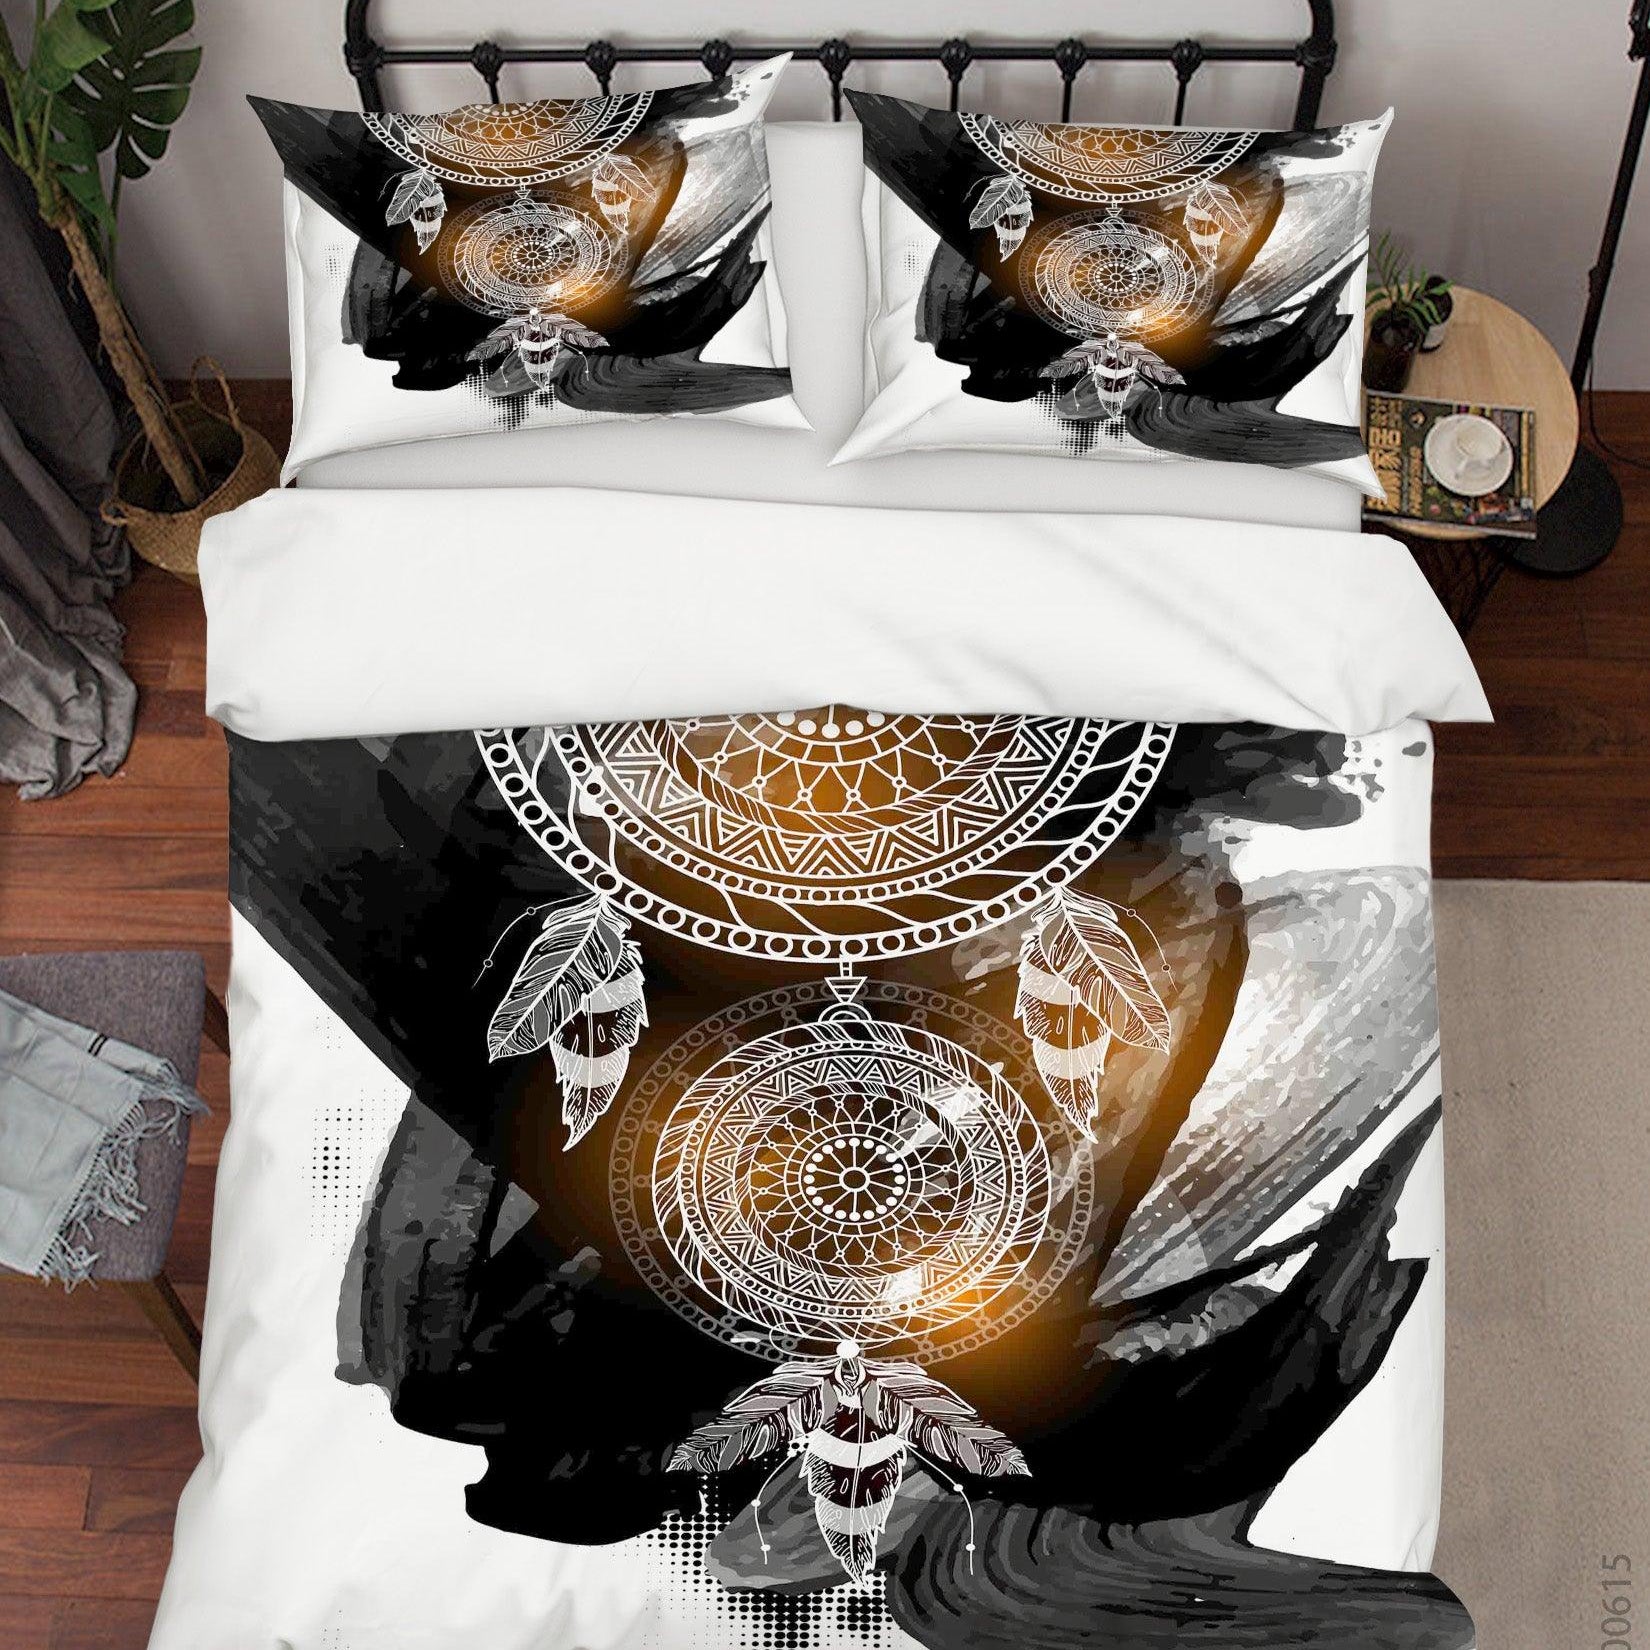 3D White Black Dreamcatcher Quilt Cover Set Bedding Set Duvet Cover Pillowcases SF- Jess Art Decoration